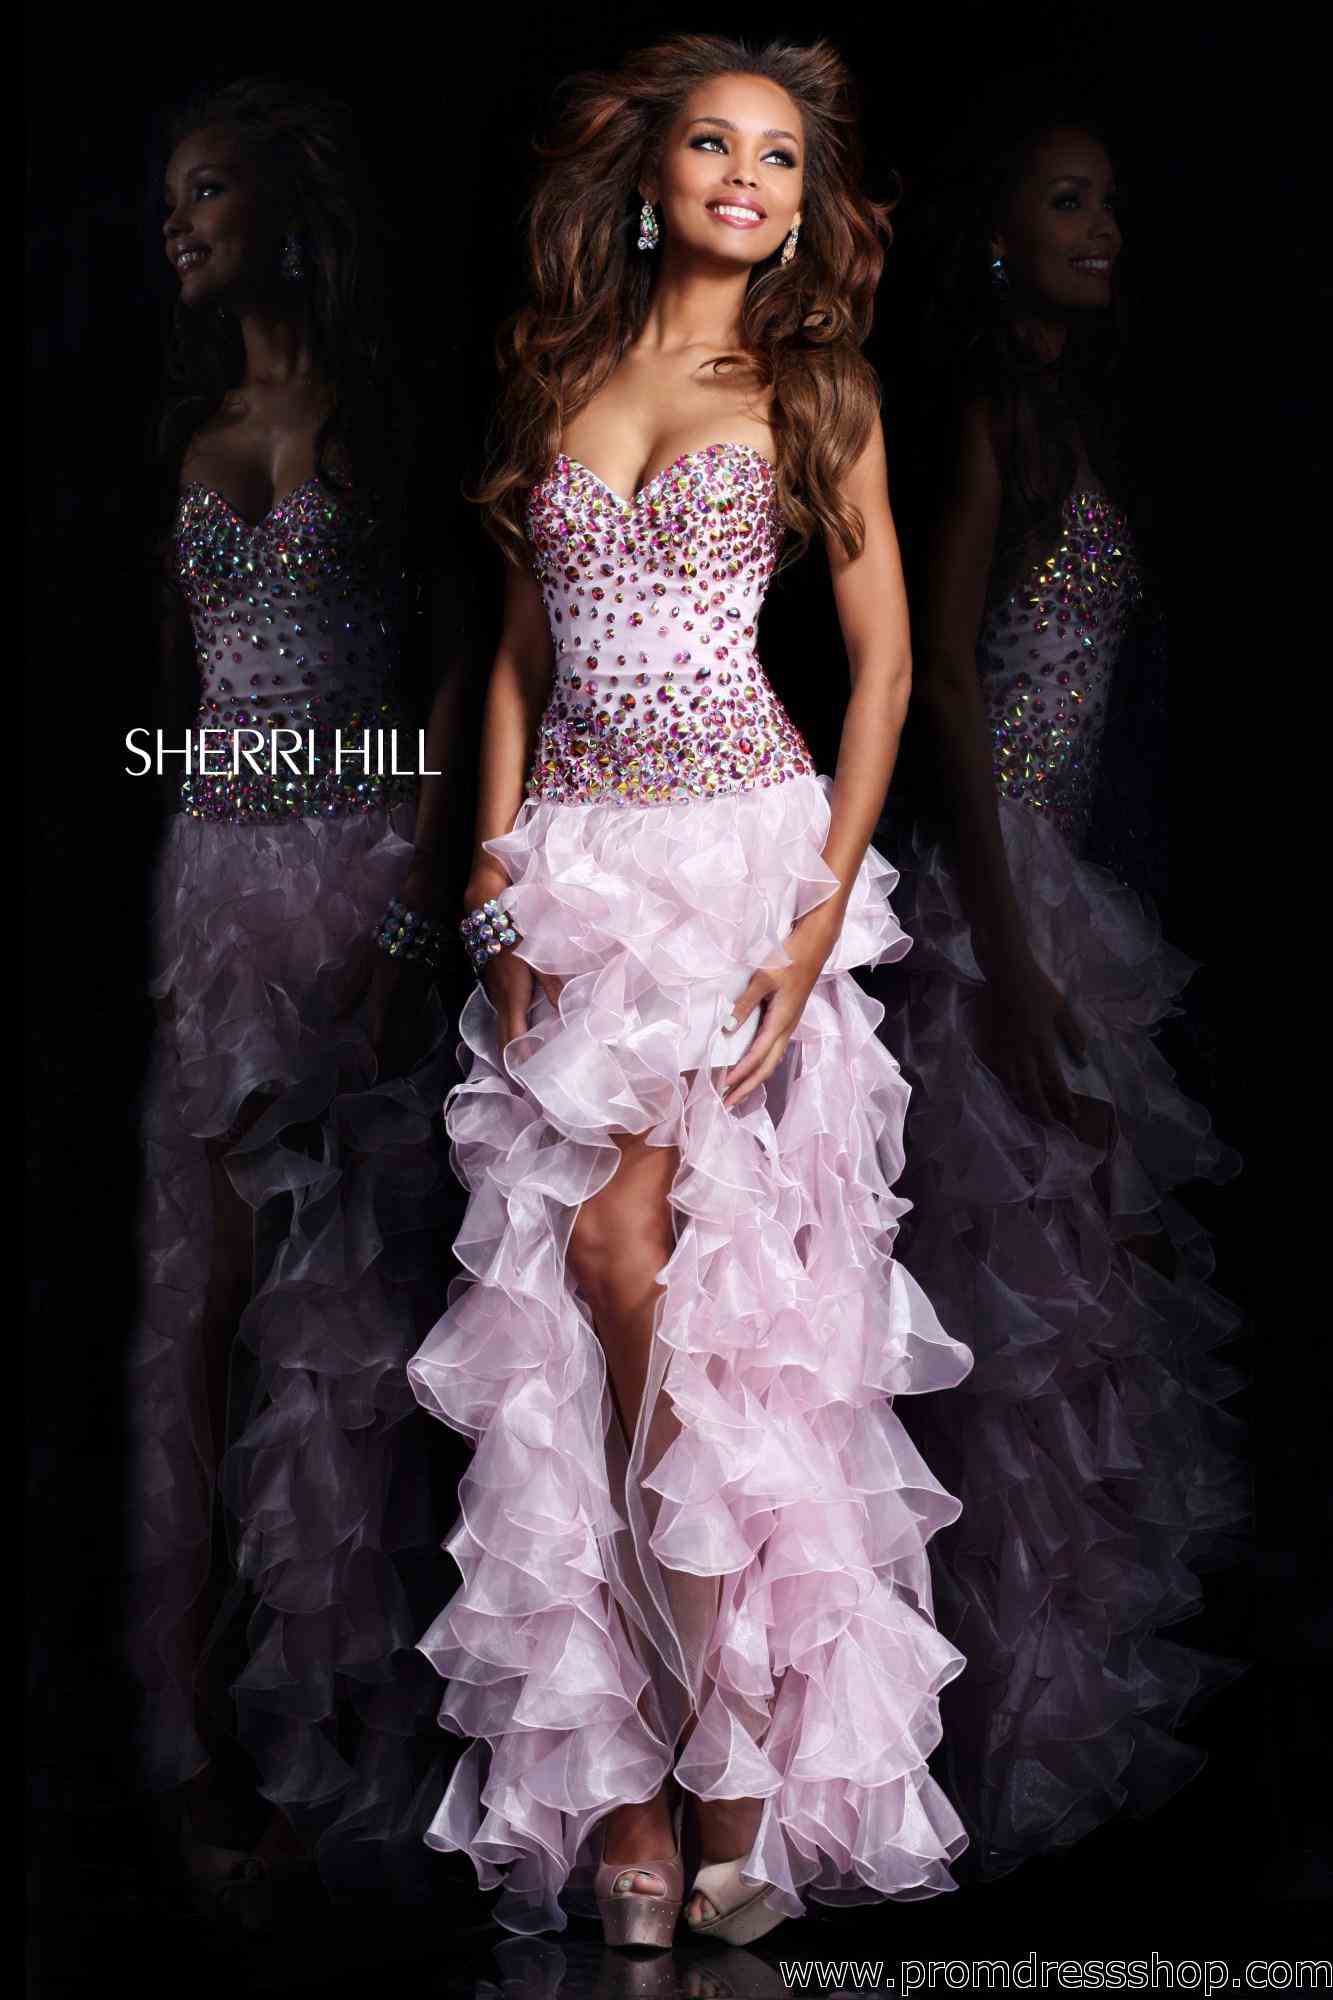 Sherri-Hill-Prom-Dress-Sherri_Hill_21104_pink_21104-sp13-4.jpg